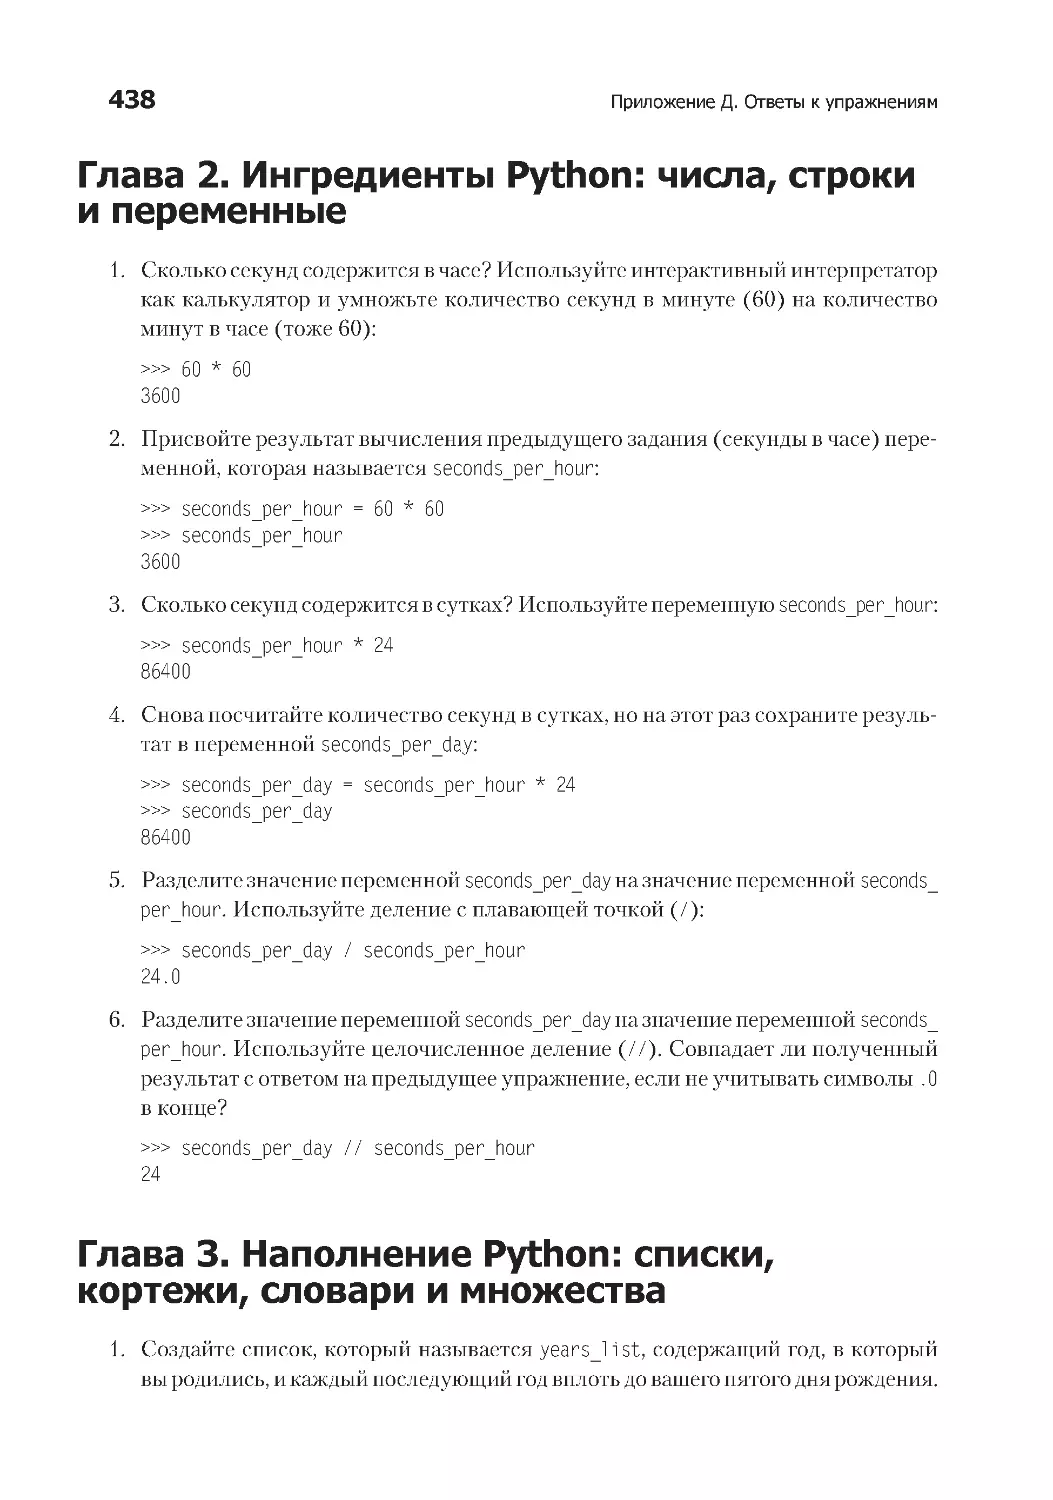 Глава 2. Ингредиенты Python
Глава 3. Наполнение Python